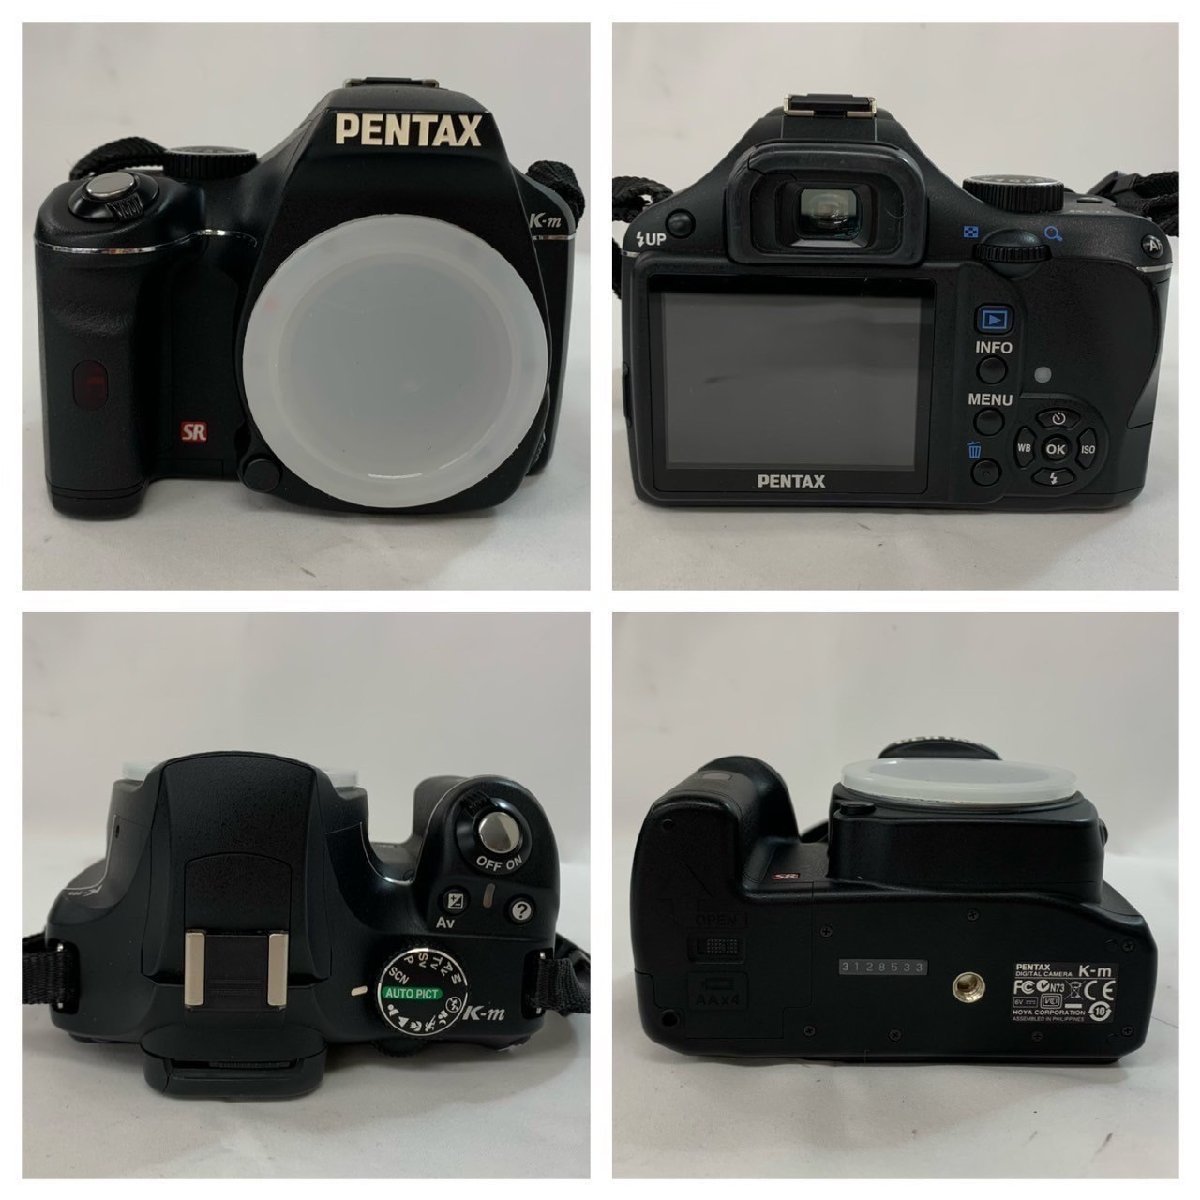 【中古品】【ジャンク品】(3点set)PENTAX デジタルカメラ[K-m]レンズ[1:4-5.6/50-200mm ED][1:3.5-5.6/18-55mm AL]【送料別】TD0225_画像2